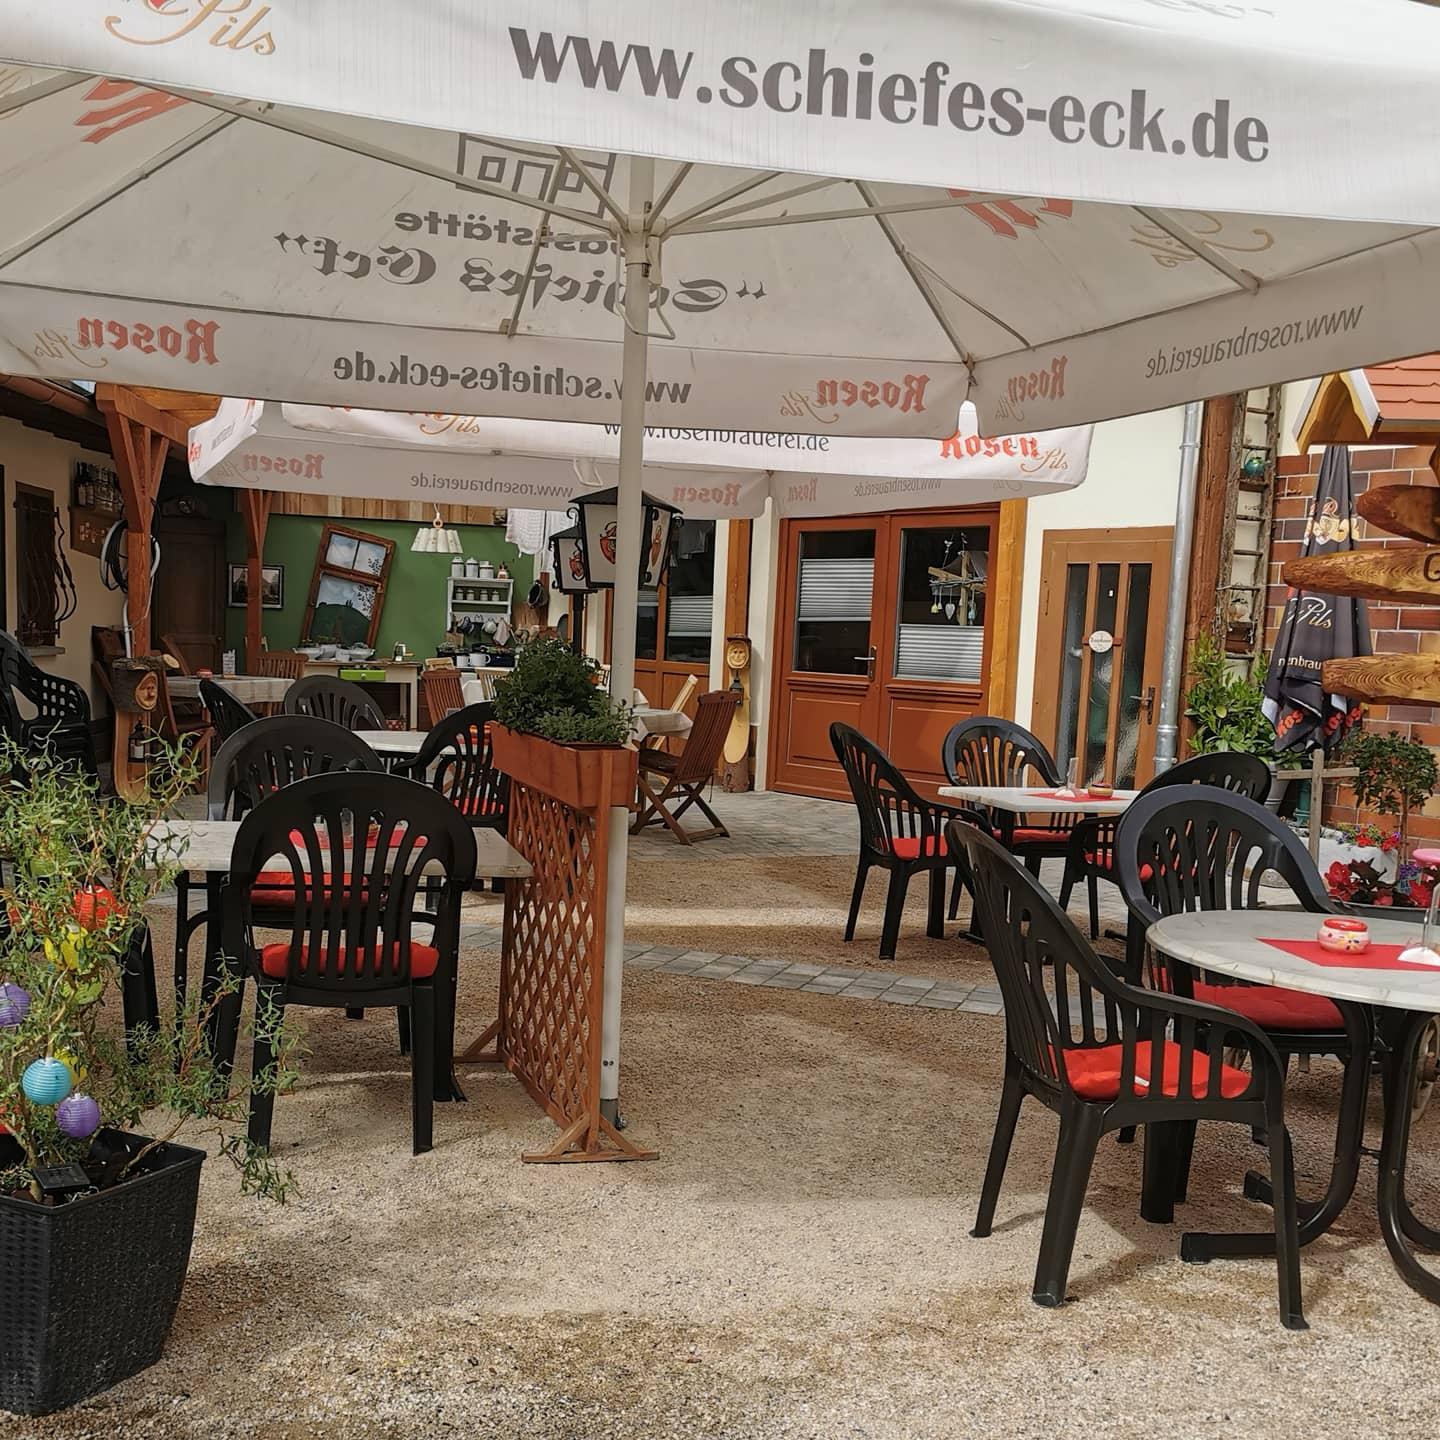 Restaurant "Janet Lehrmann Gaststätte Schiefes Eck" in  Pößneck